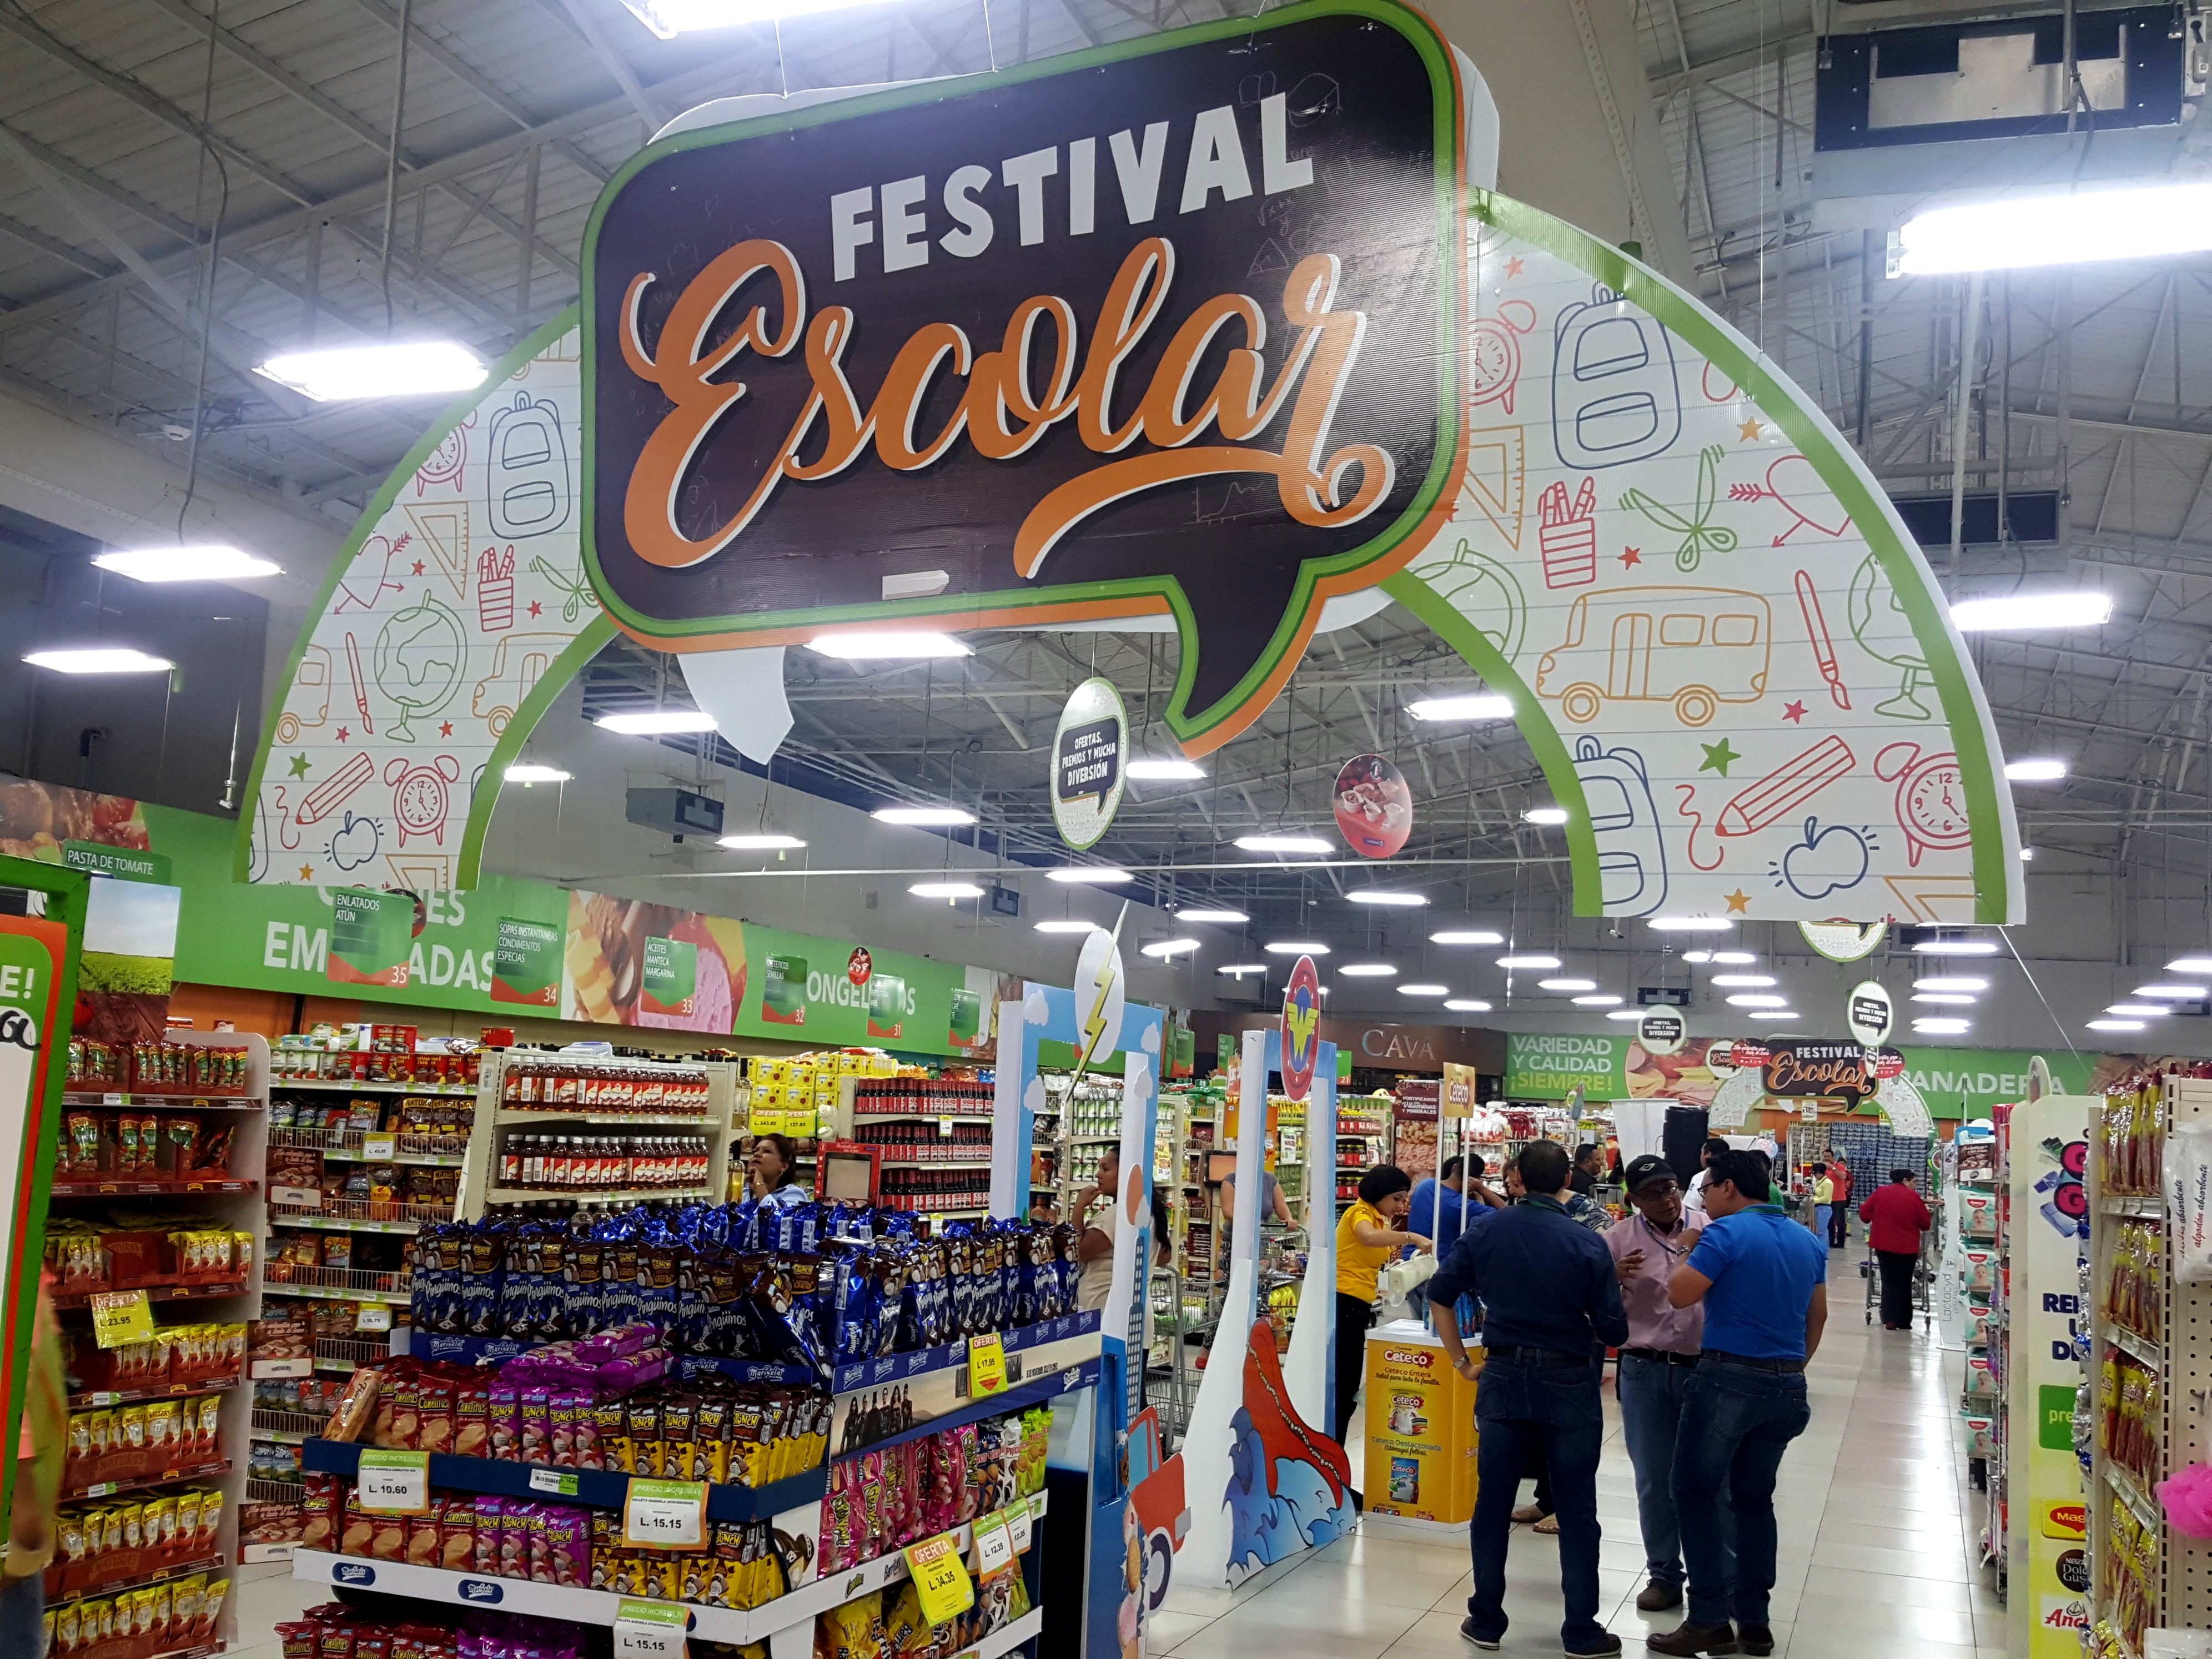 Supermercados La Colonia realiza el Festival Escolar